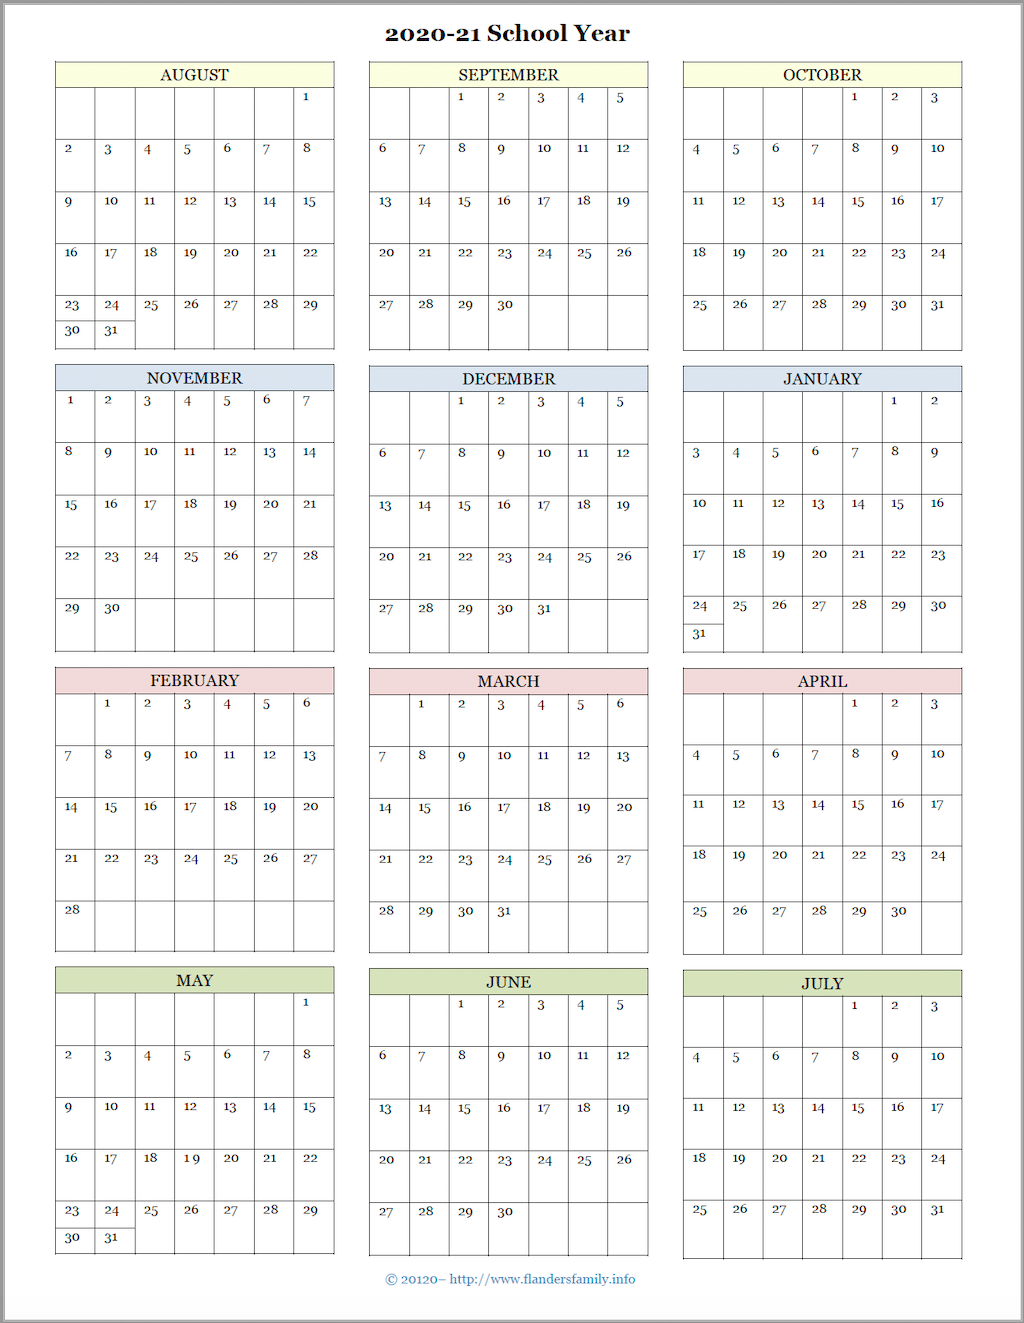 2020-21 Academic Calendar (August Start)